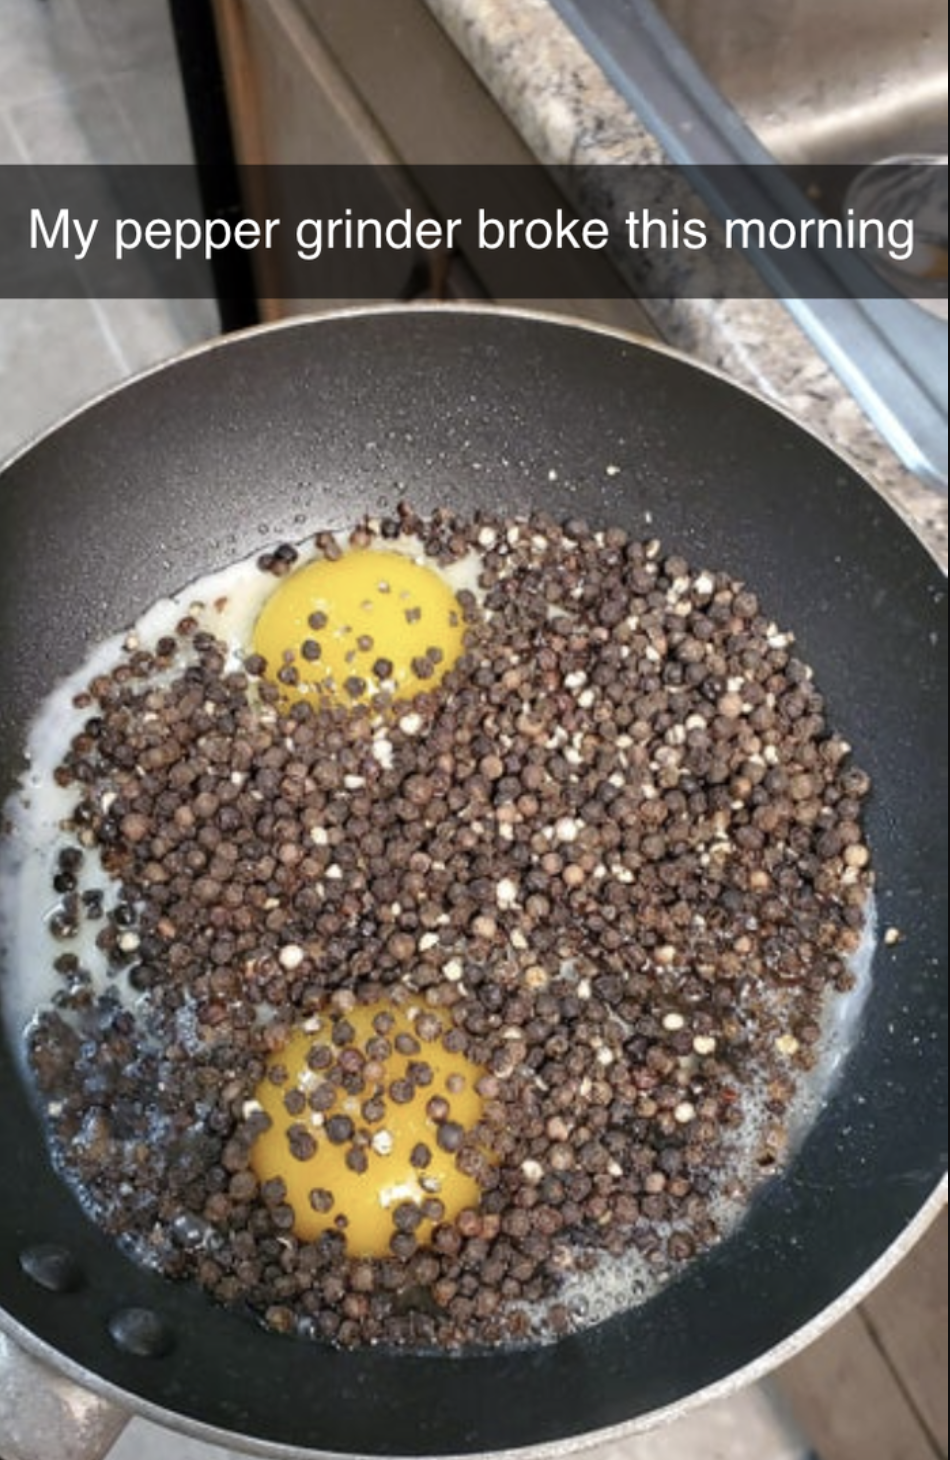 peppercorns spilled all over eggs